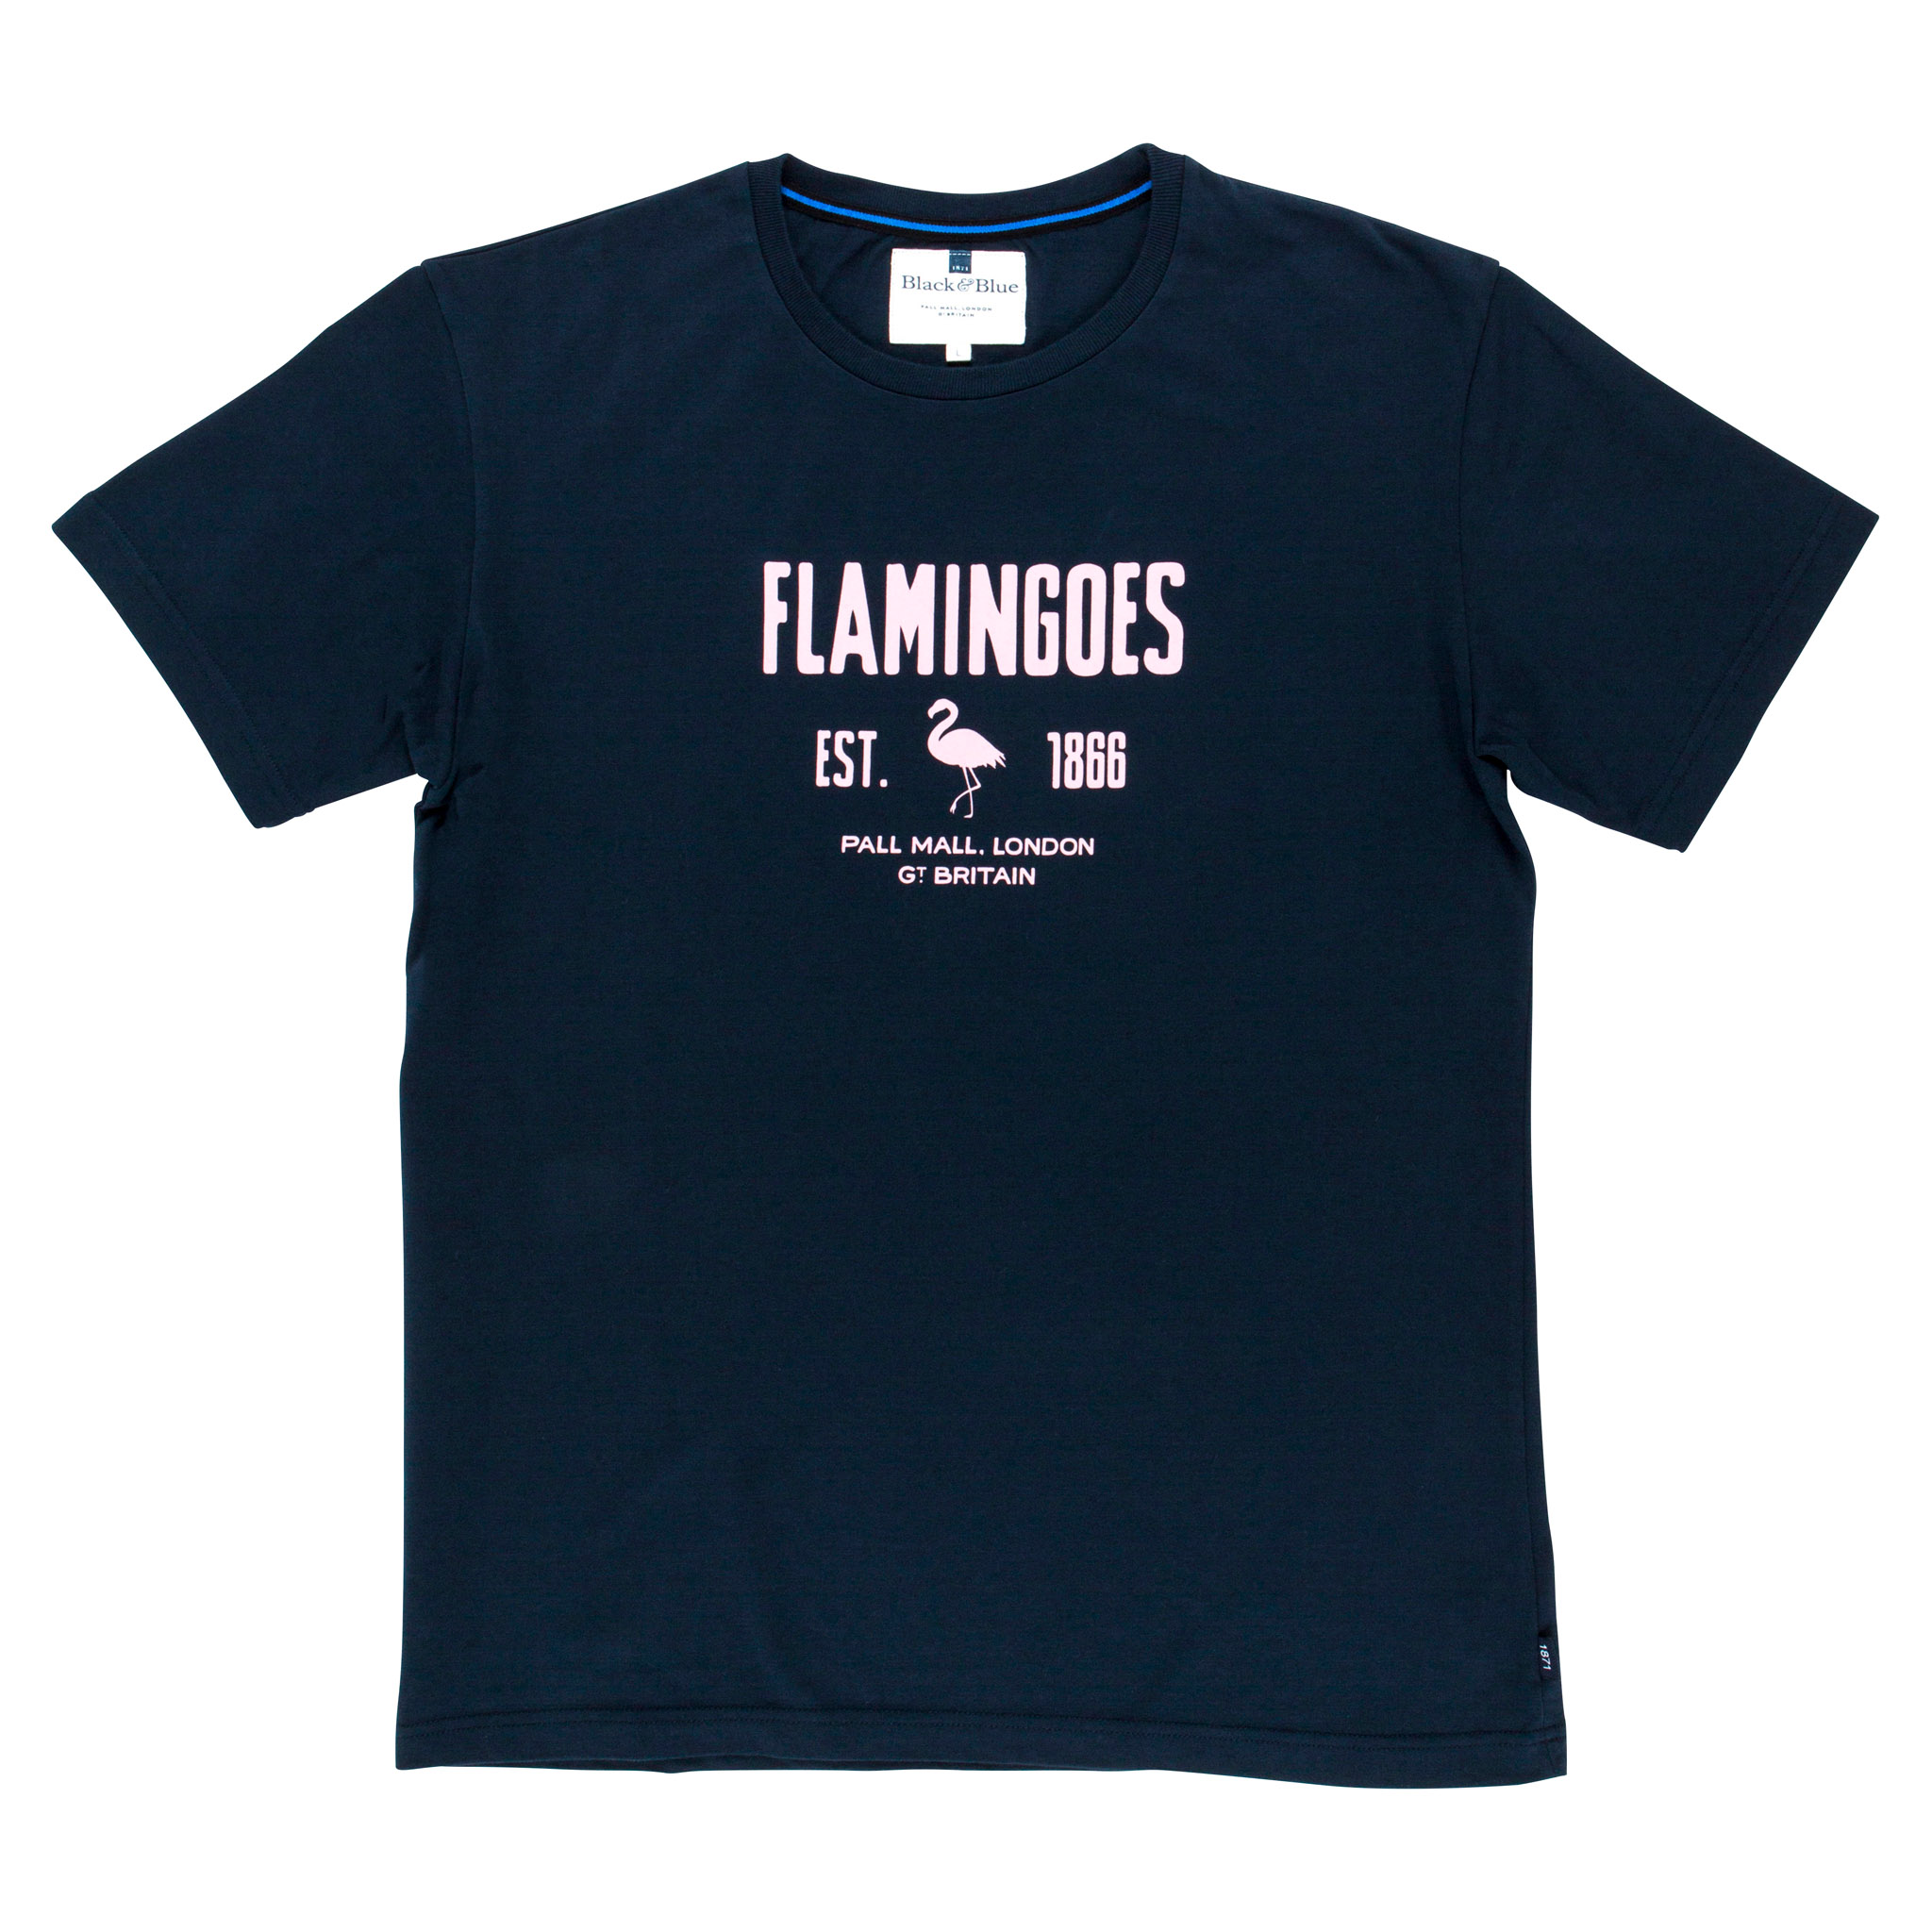 Flamingoes Navy T-shirt